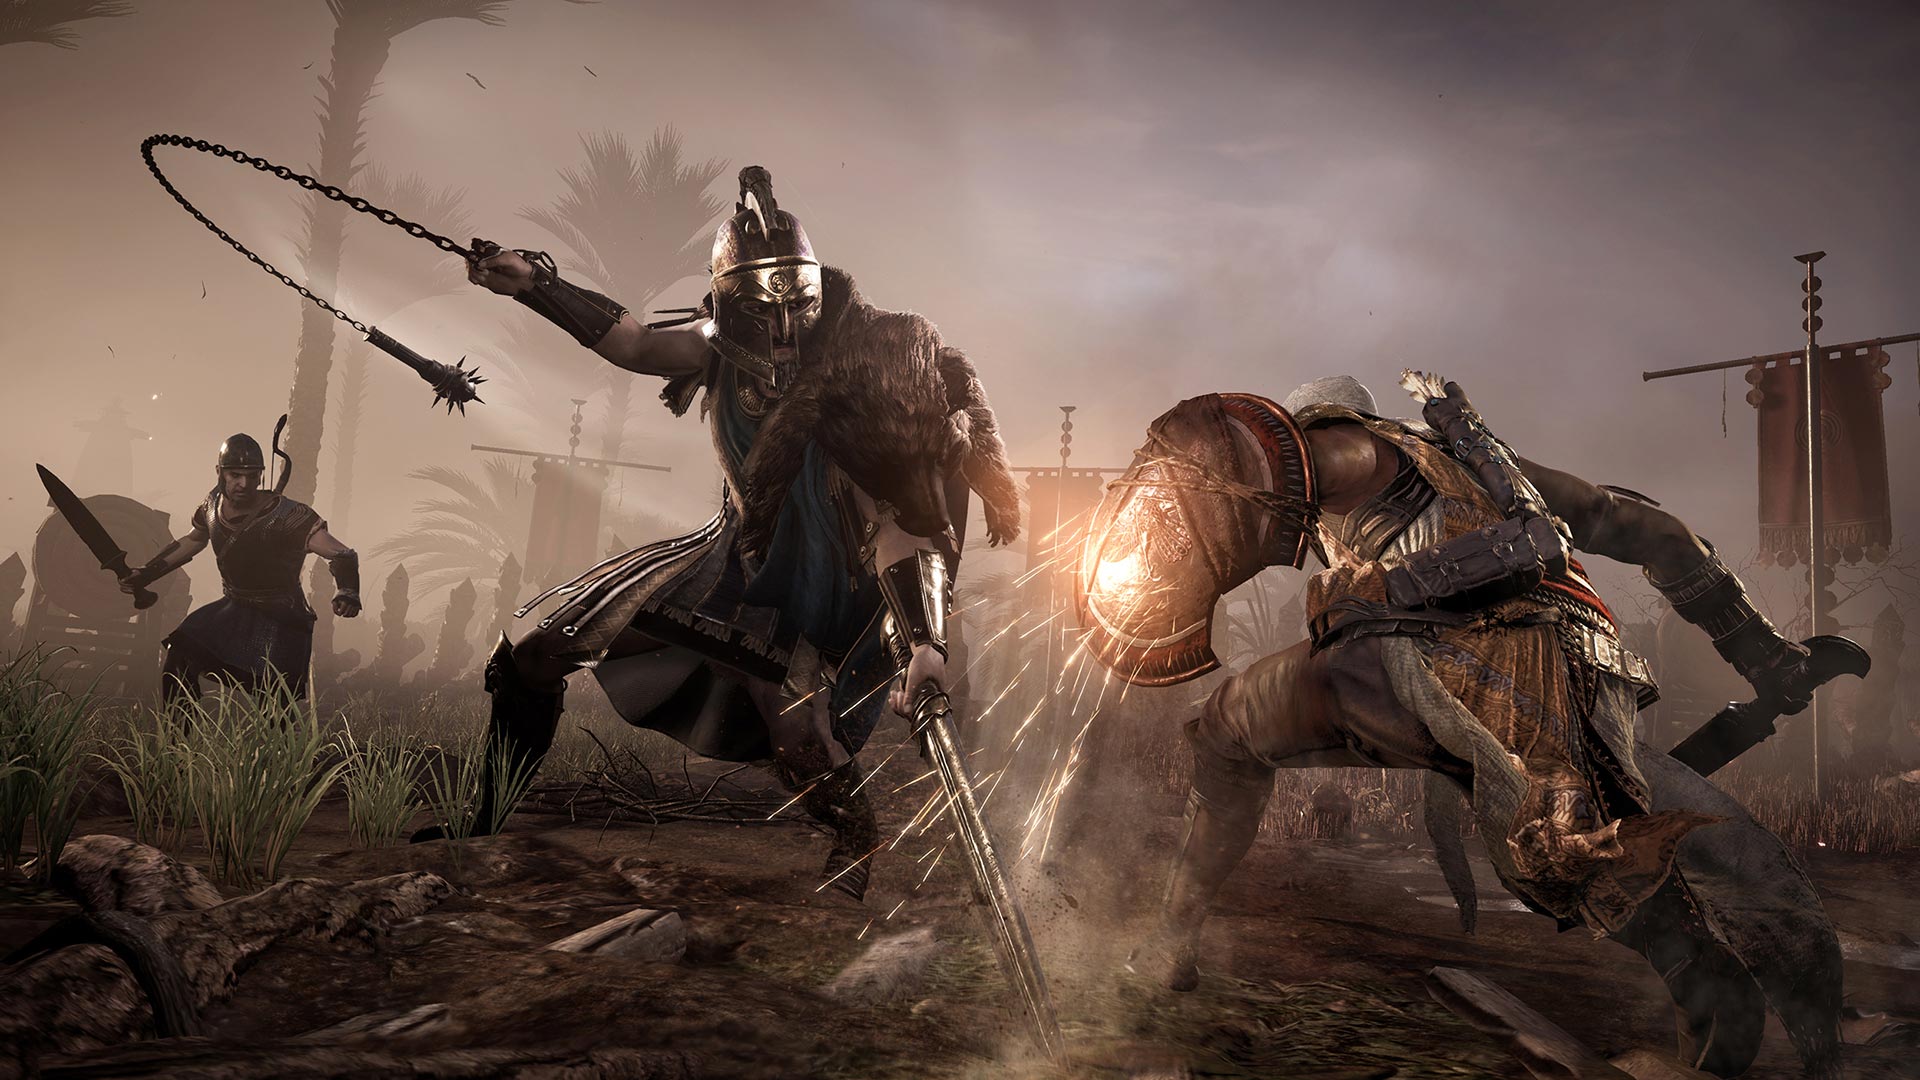 10 أشياء يجب أن تعرفها قبل شرائك لعبة Assassin's Creed Origins